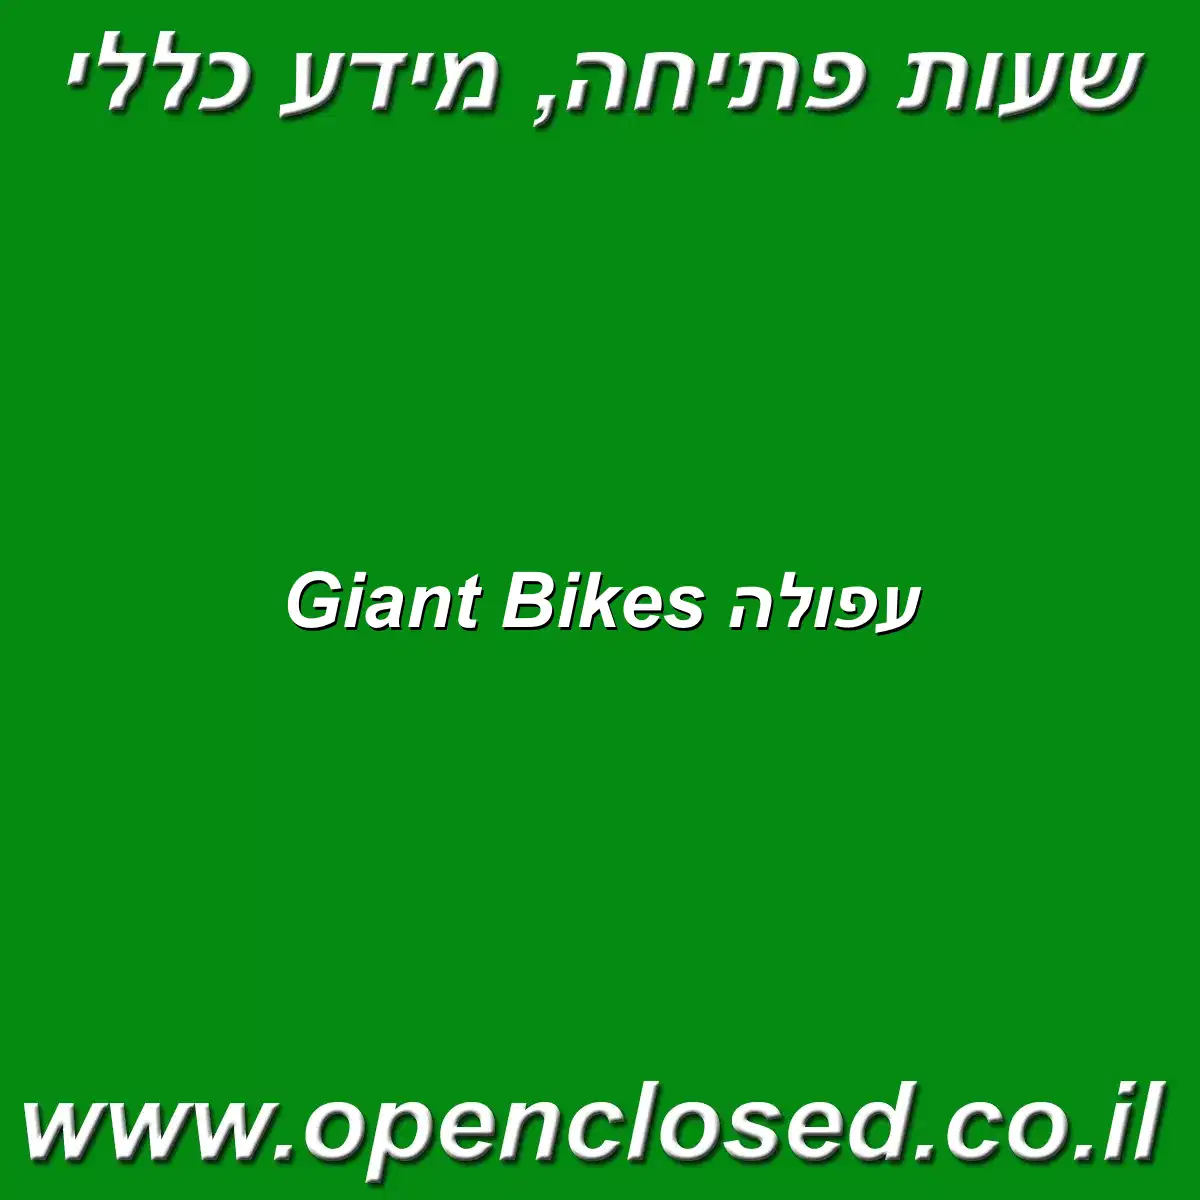 Giant Bikes עפולה